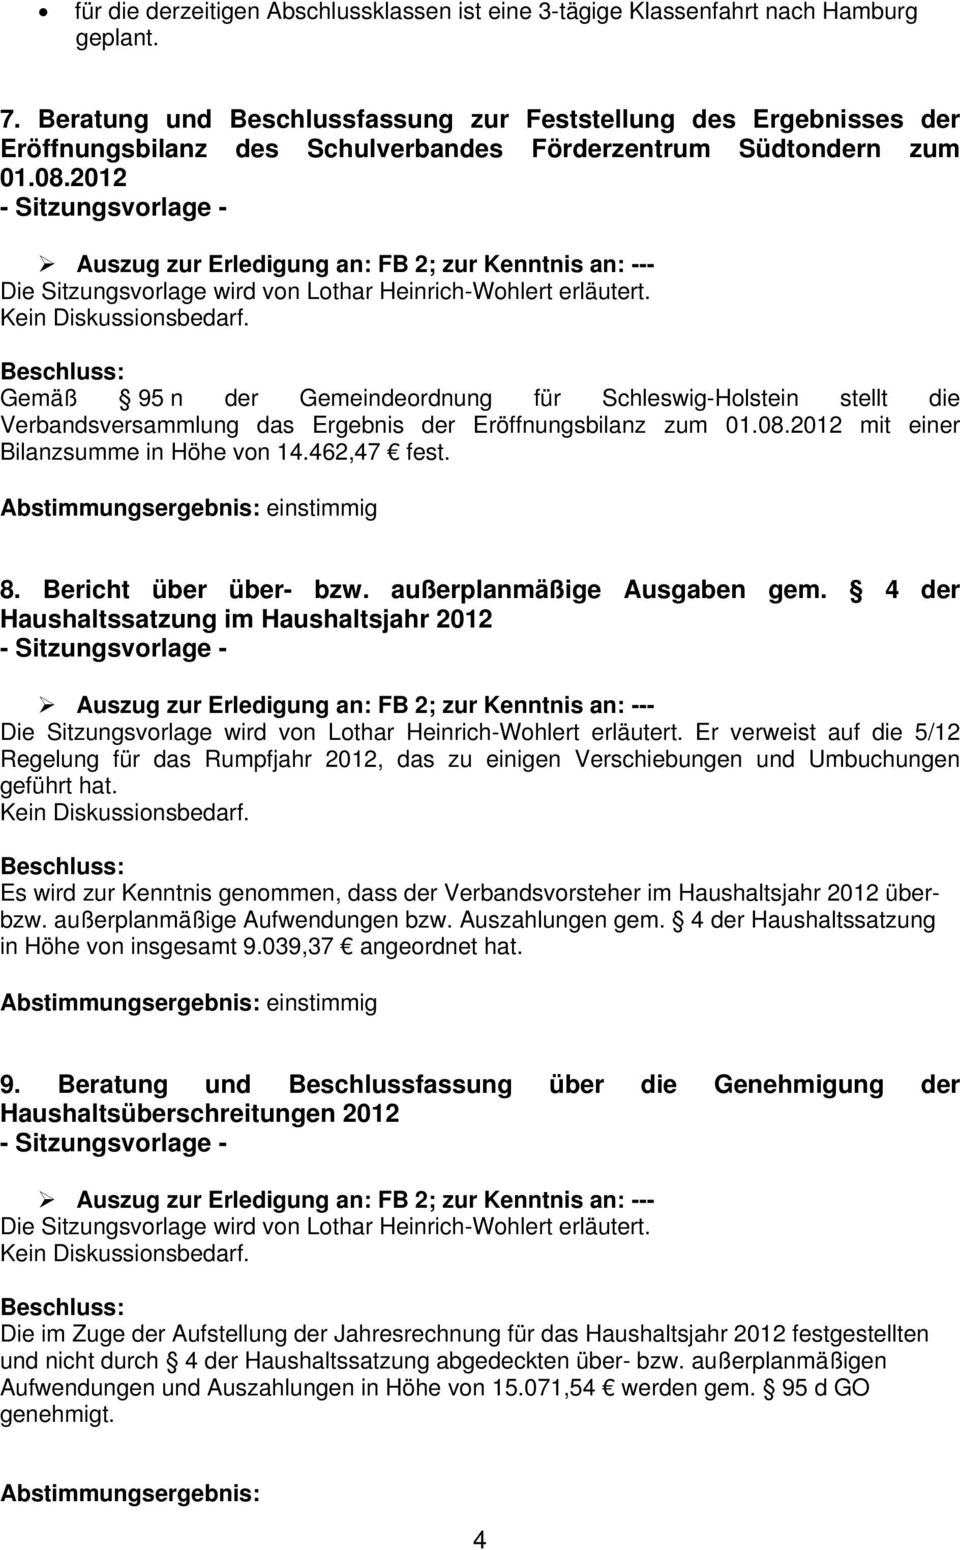 2012 Gemäß 95 n der Gemeindeordnung für Schleswig-Holstein stellt die Verbandsversammlung das Ergebnis der Eröffnungsbilanz zum 01.08.2012 mit einer Bilanzsumme in Höhe von 14.462,47 fest. 8.